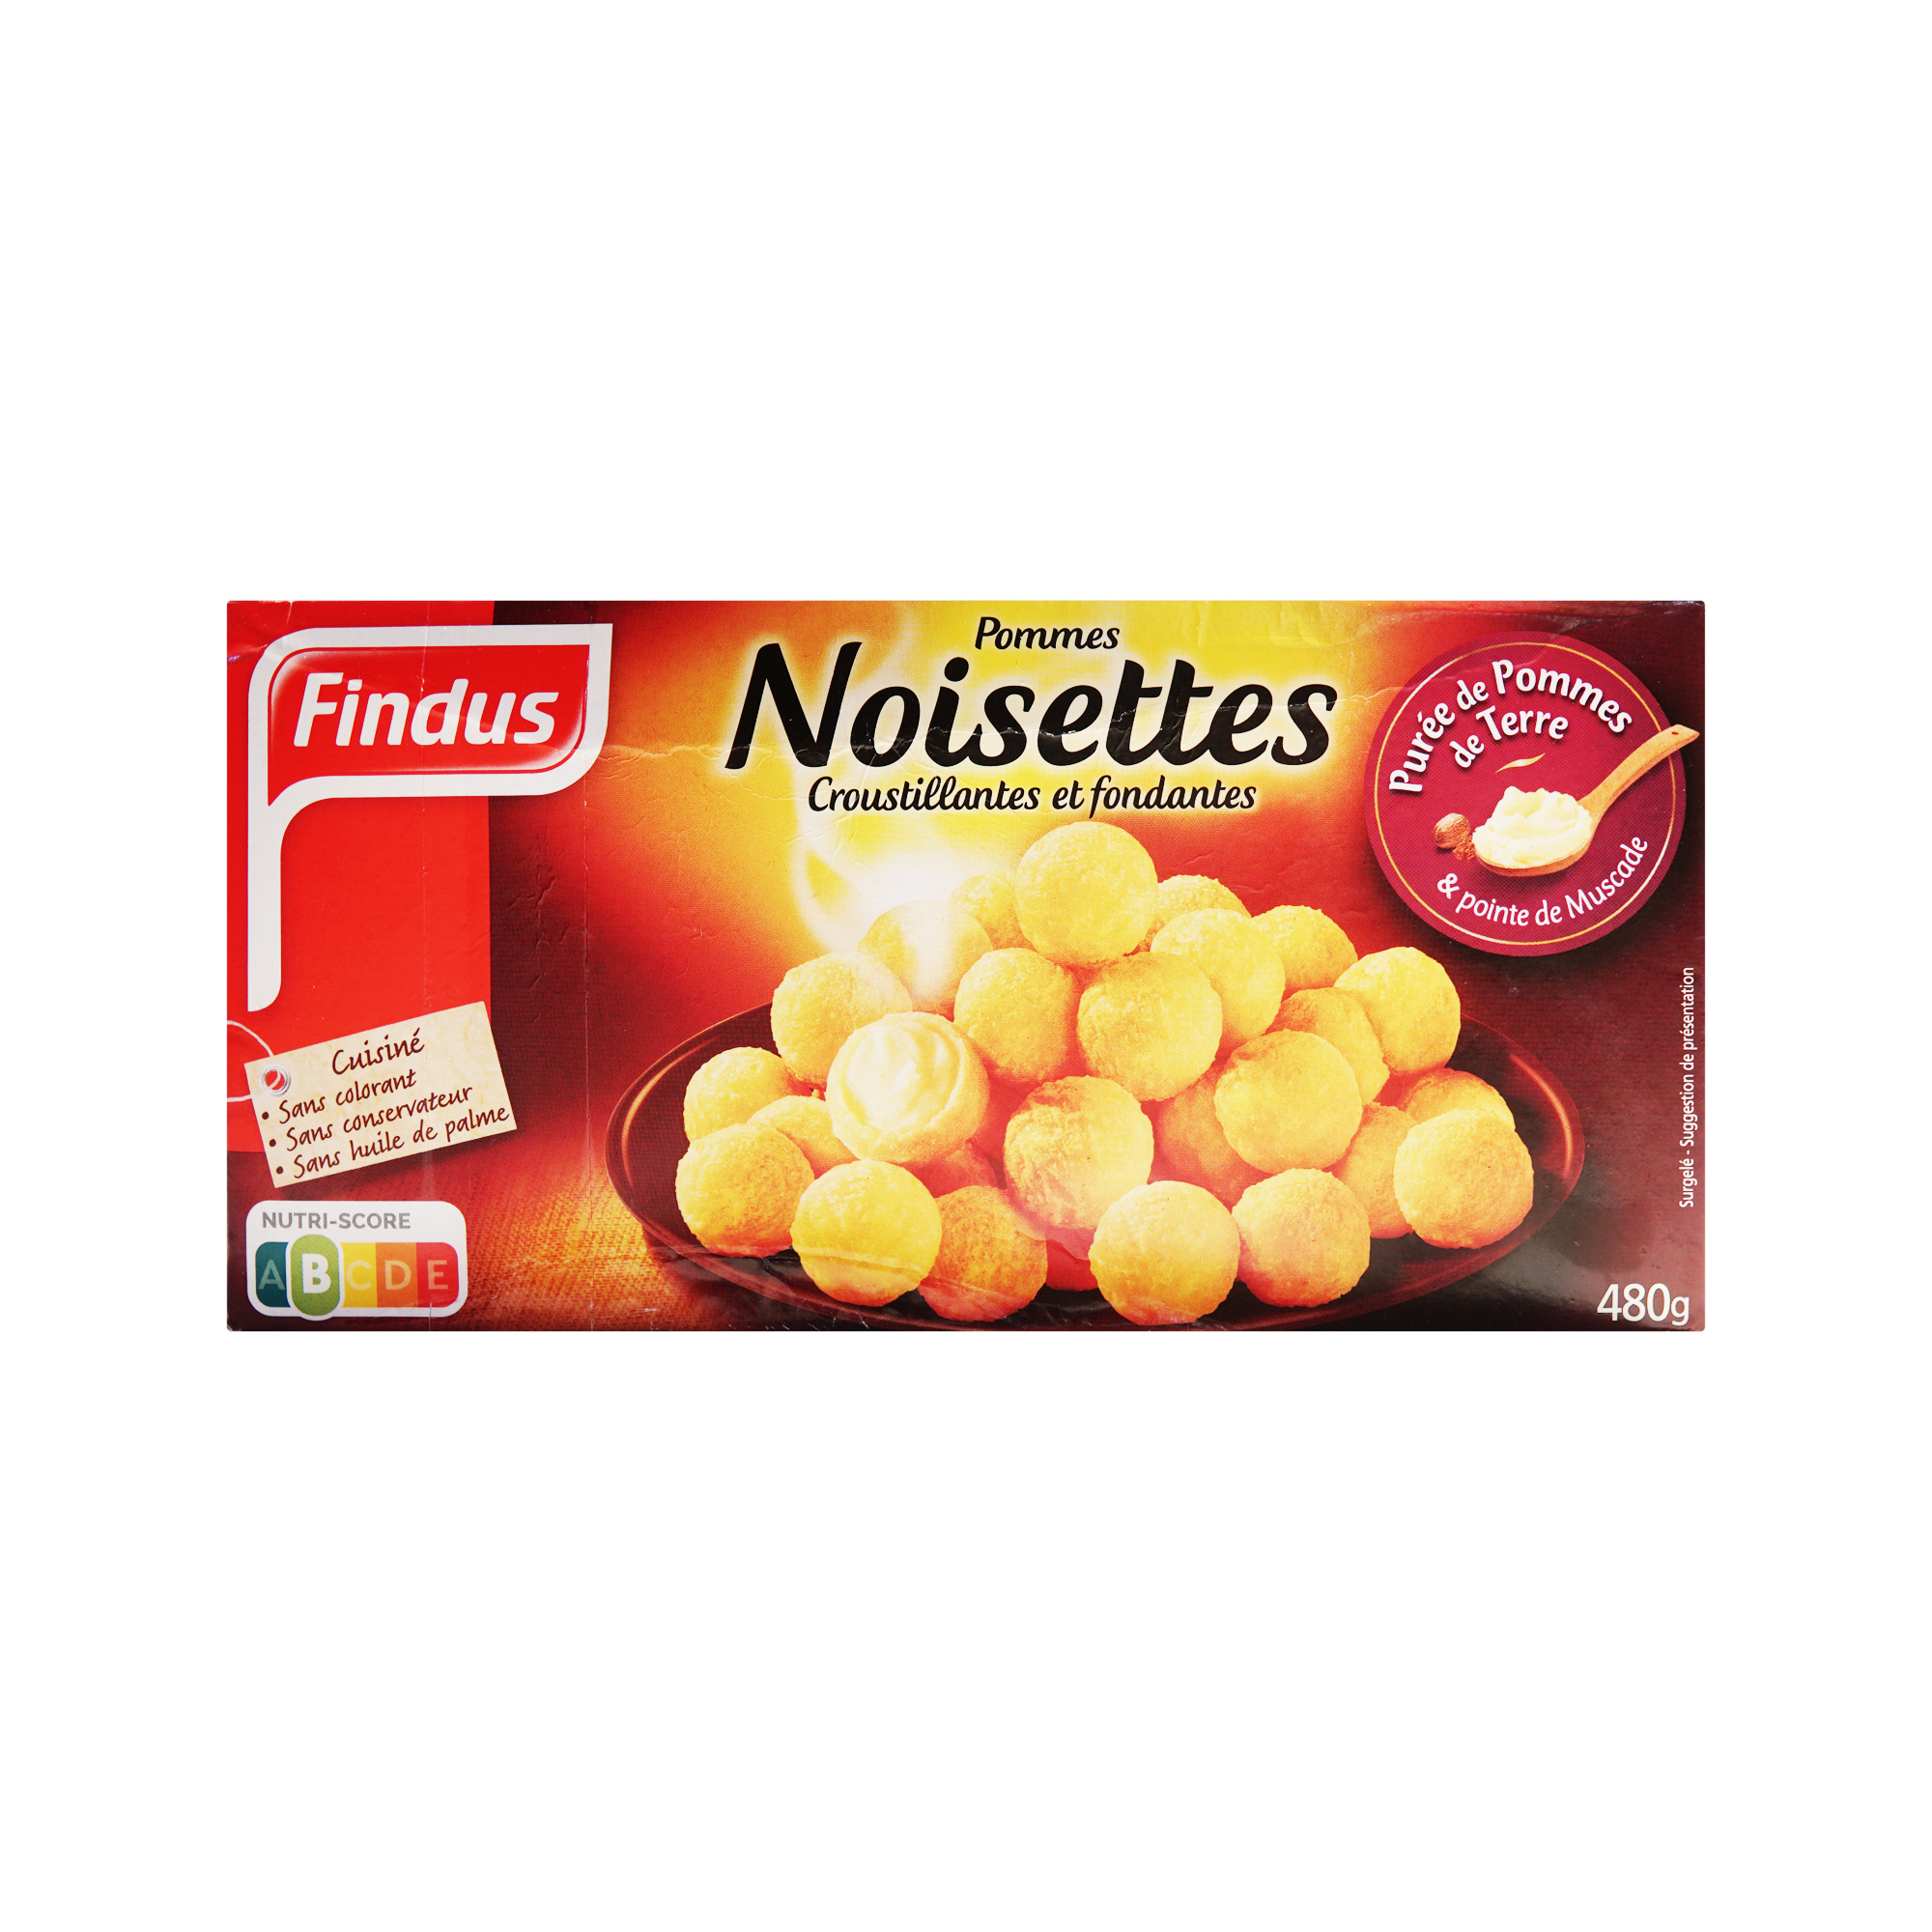 Findus Noisettes Potatoes Fondant (480g)